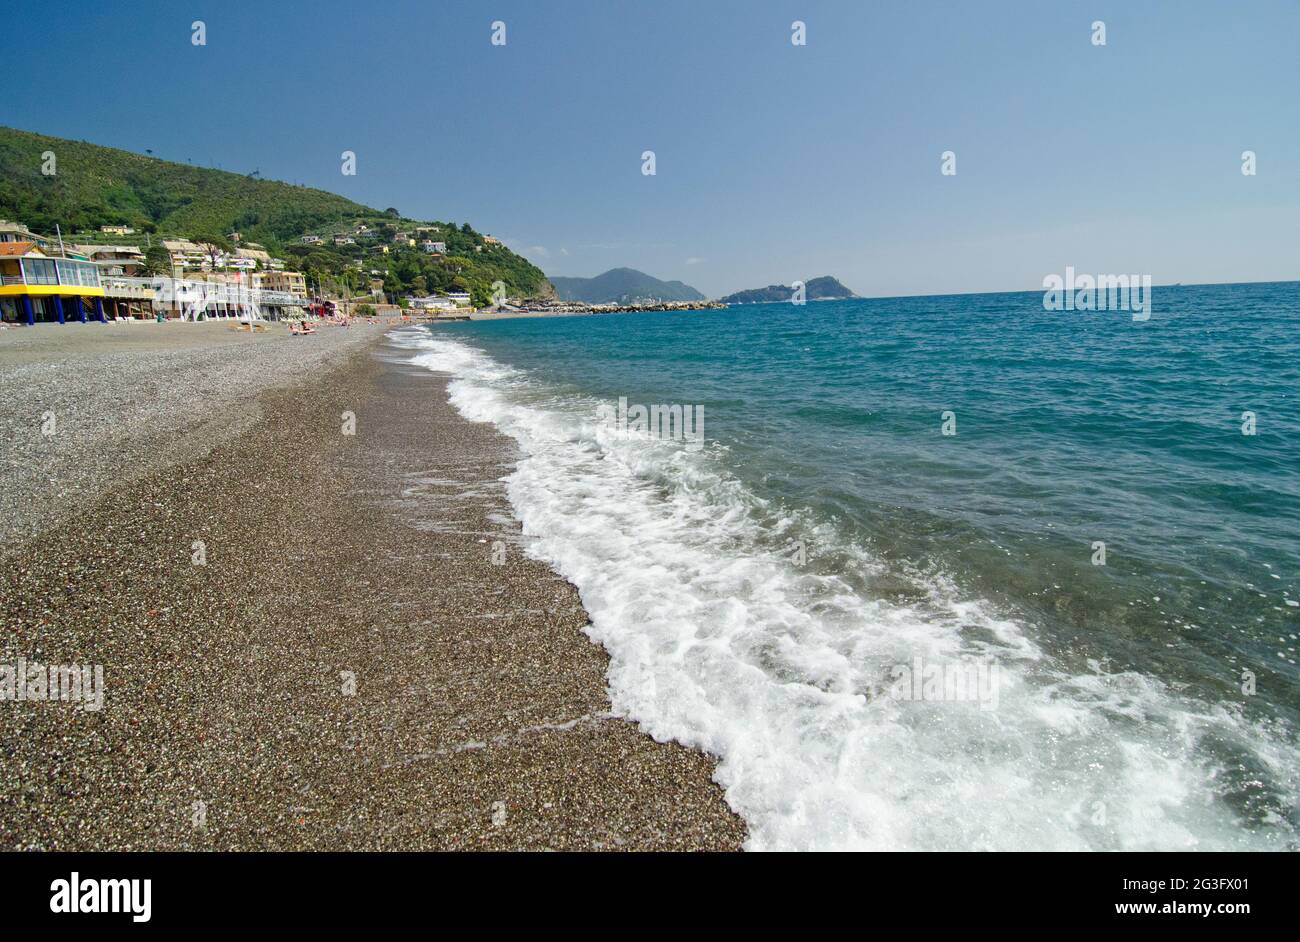 Paysage de bord de mer de Santa Margherita Ligure, Italie Banque D'Images